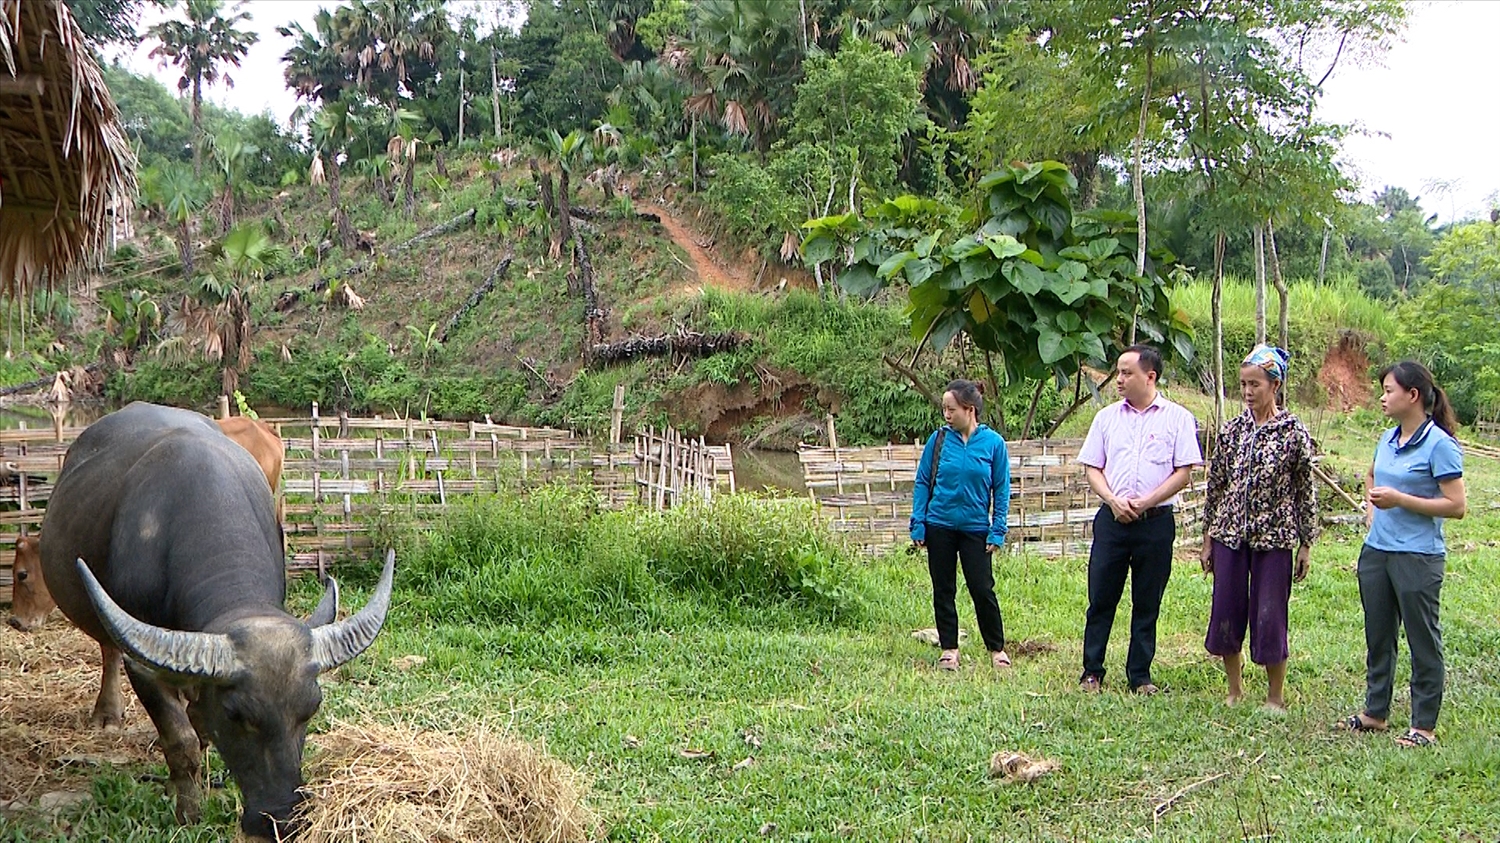 Hộ Ma Thị Quyển ở thôn Nà Nghè, xã Hồng Quang, huyện Lâm Bình vay 50 triệu đồng từ chương trình hộ nghèo để đầu tư mua 1 con trâu và 1 con bò